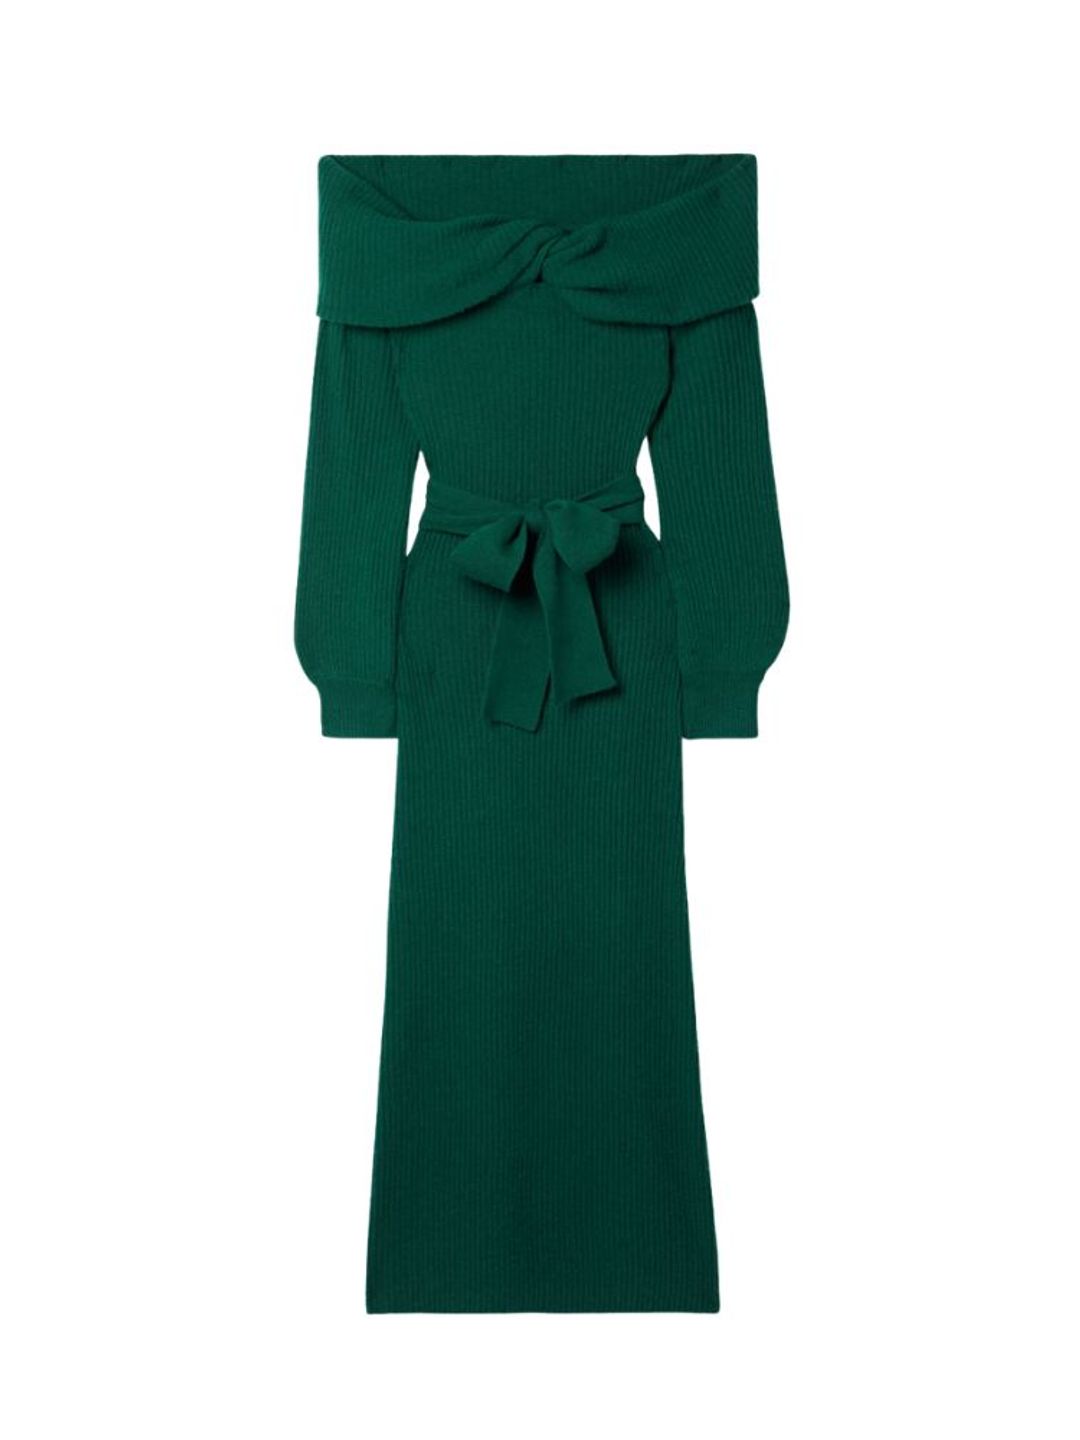 Green off-the-shoulder knit dress